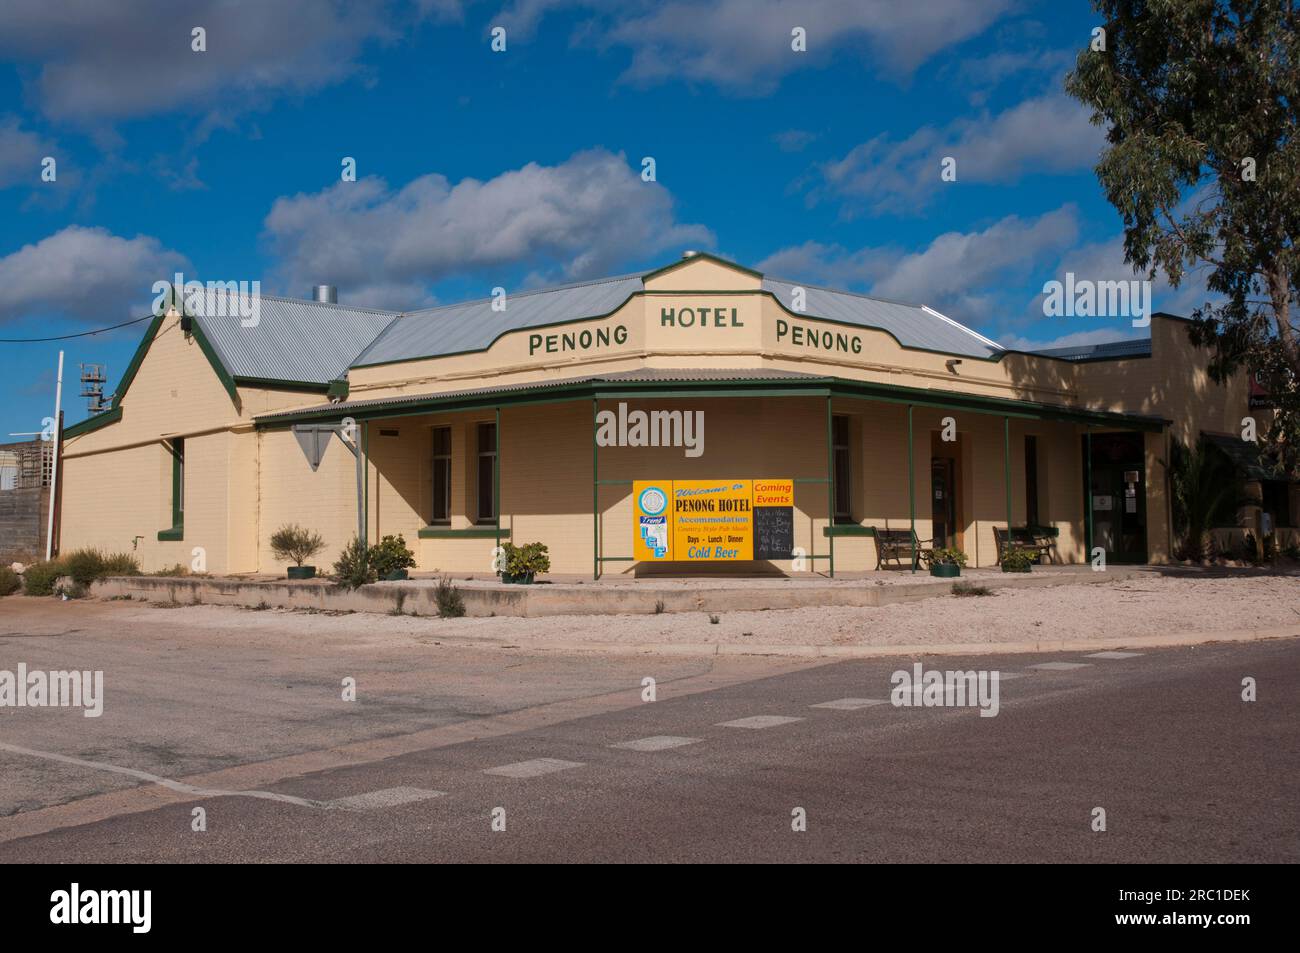 Penong Hotel, Penong, South Australia Stock Photo